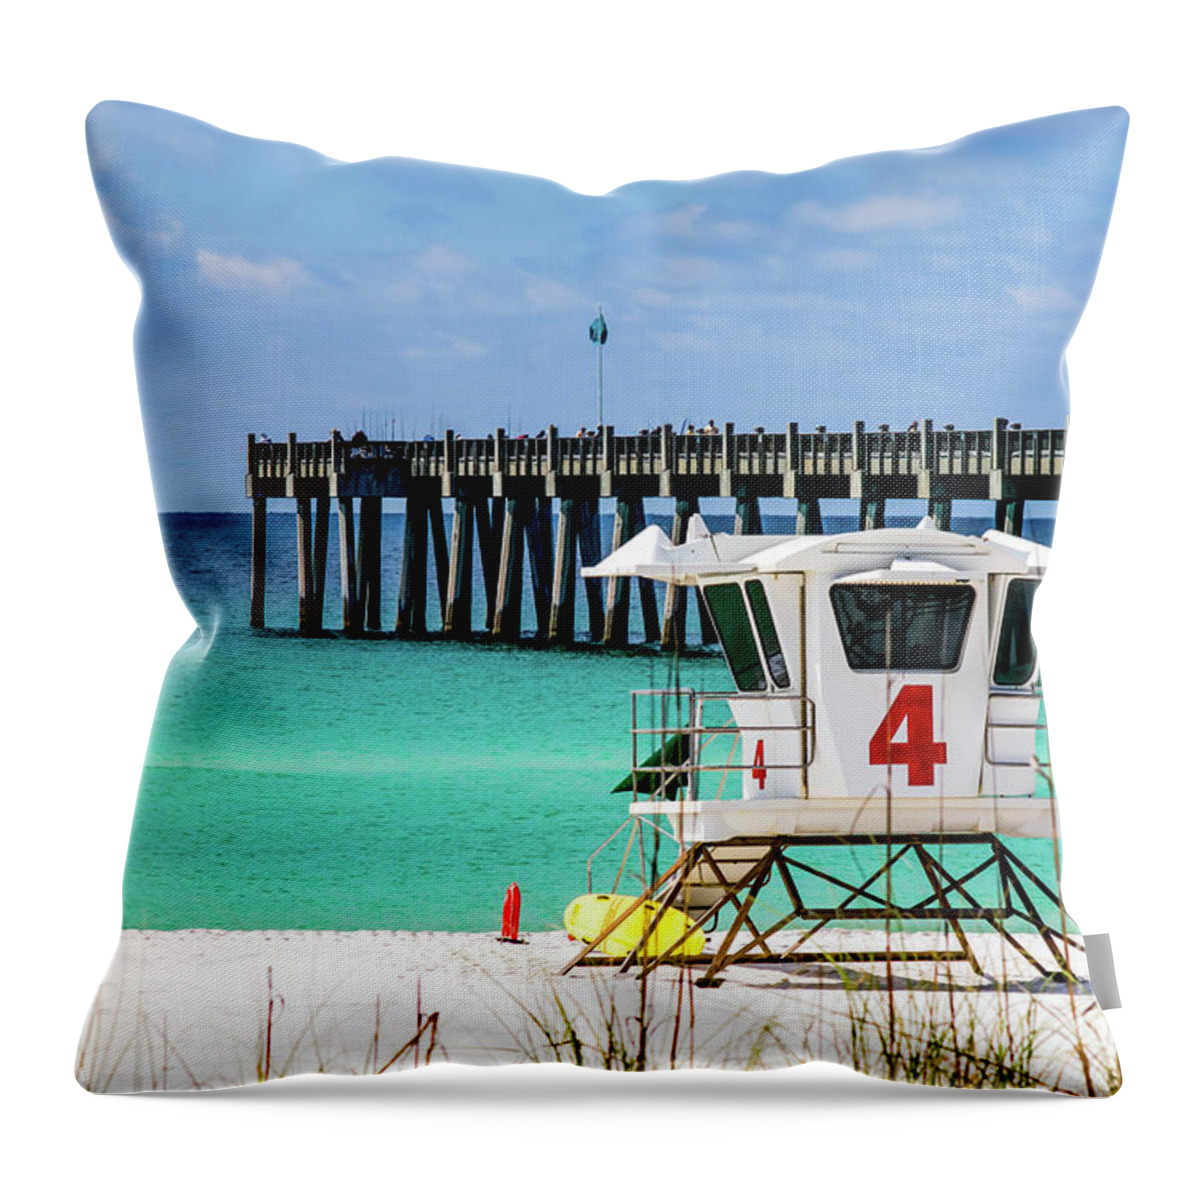 Pensacola Beach Throw Pillow featuring the photograph Emerald Pensacola Beach Florida Pier by Beachtown Views